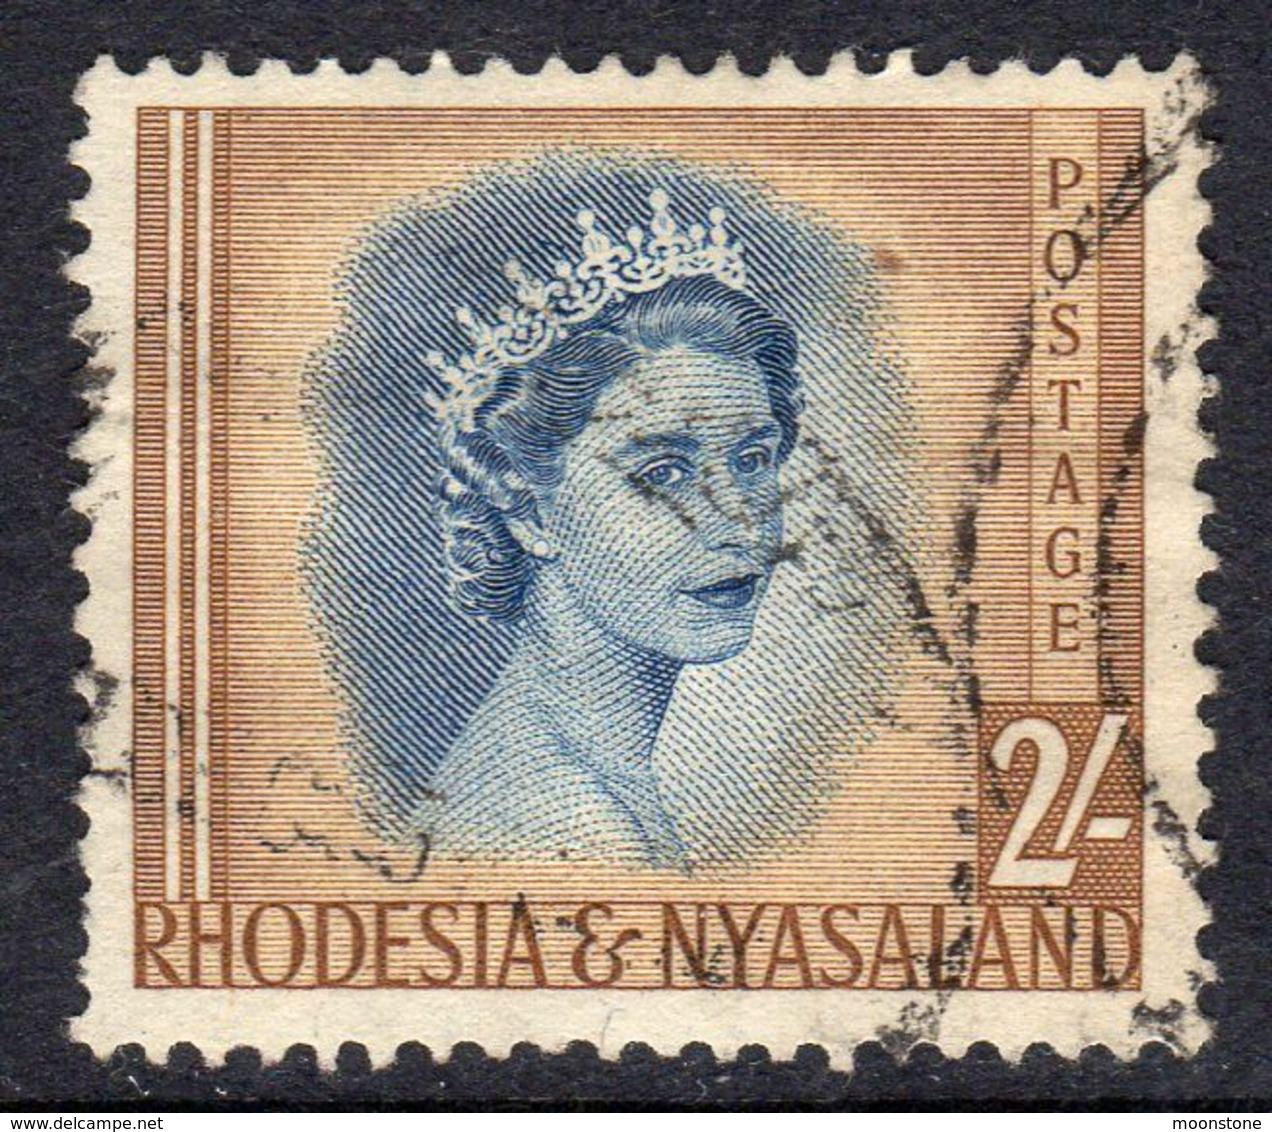 Rhodesia & Nyasaland 1954 Definitives 2/- Value, Used, SG 11 (BA) - Rhodésie & Nyasaland (1954-1963)